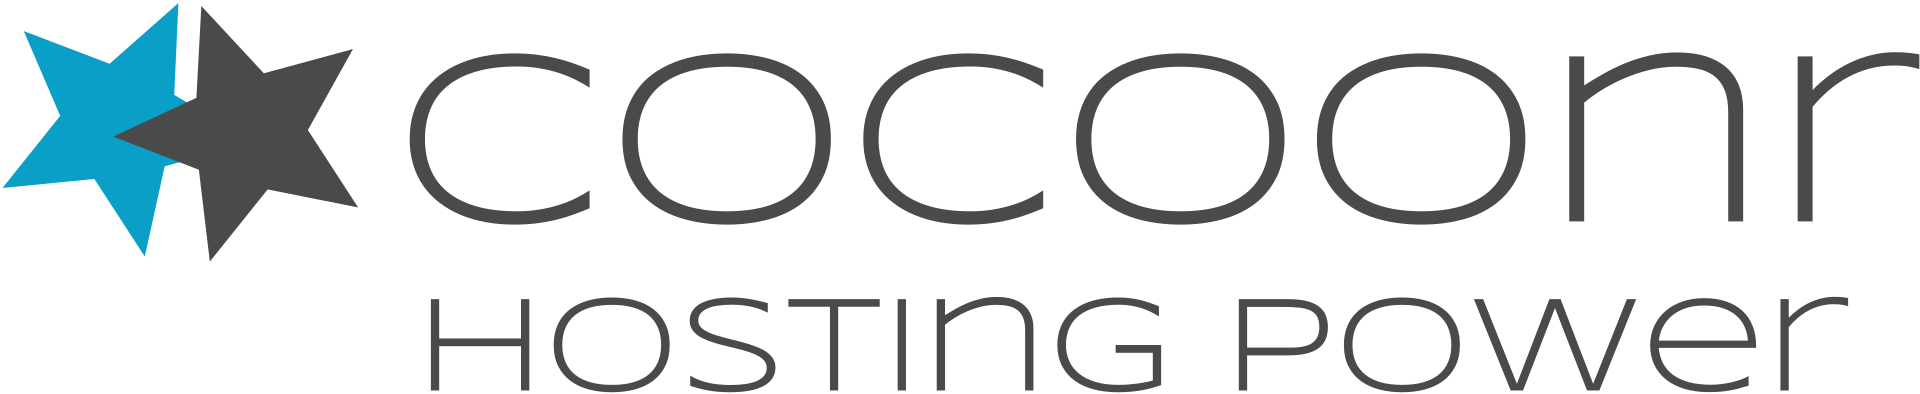 Cocoonr, l'agence immobilière spécialiste de la location courte durée